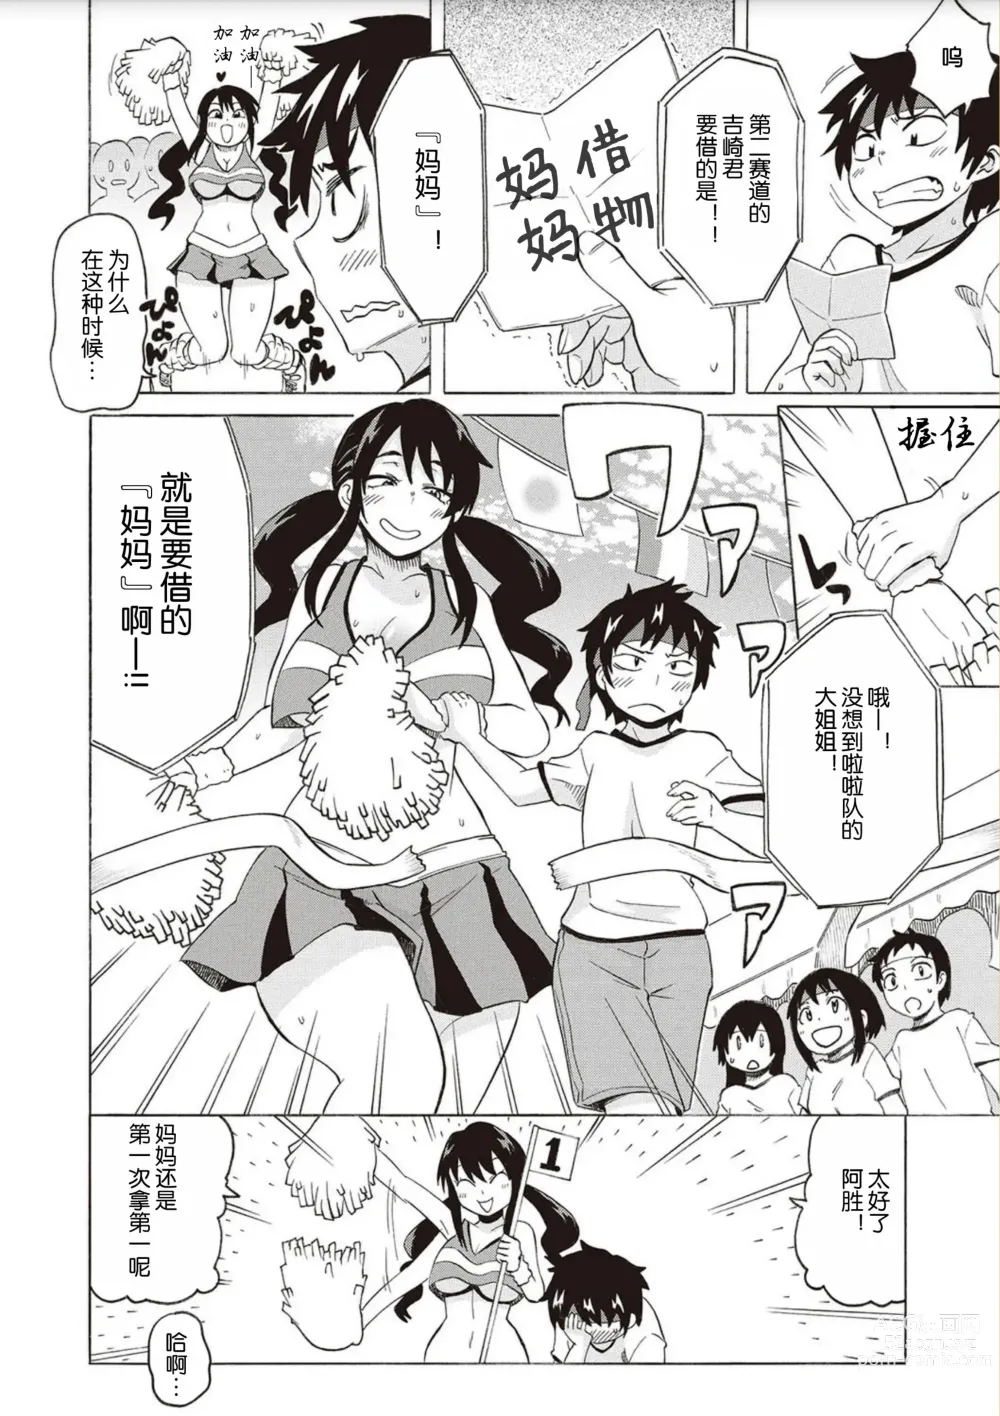 Page 2 of manga BitCheer Mama